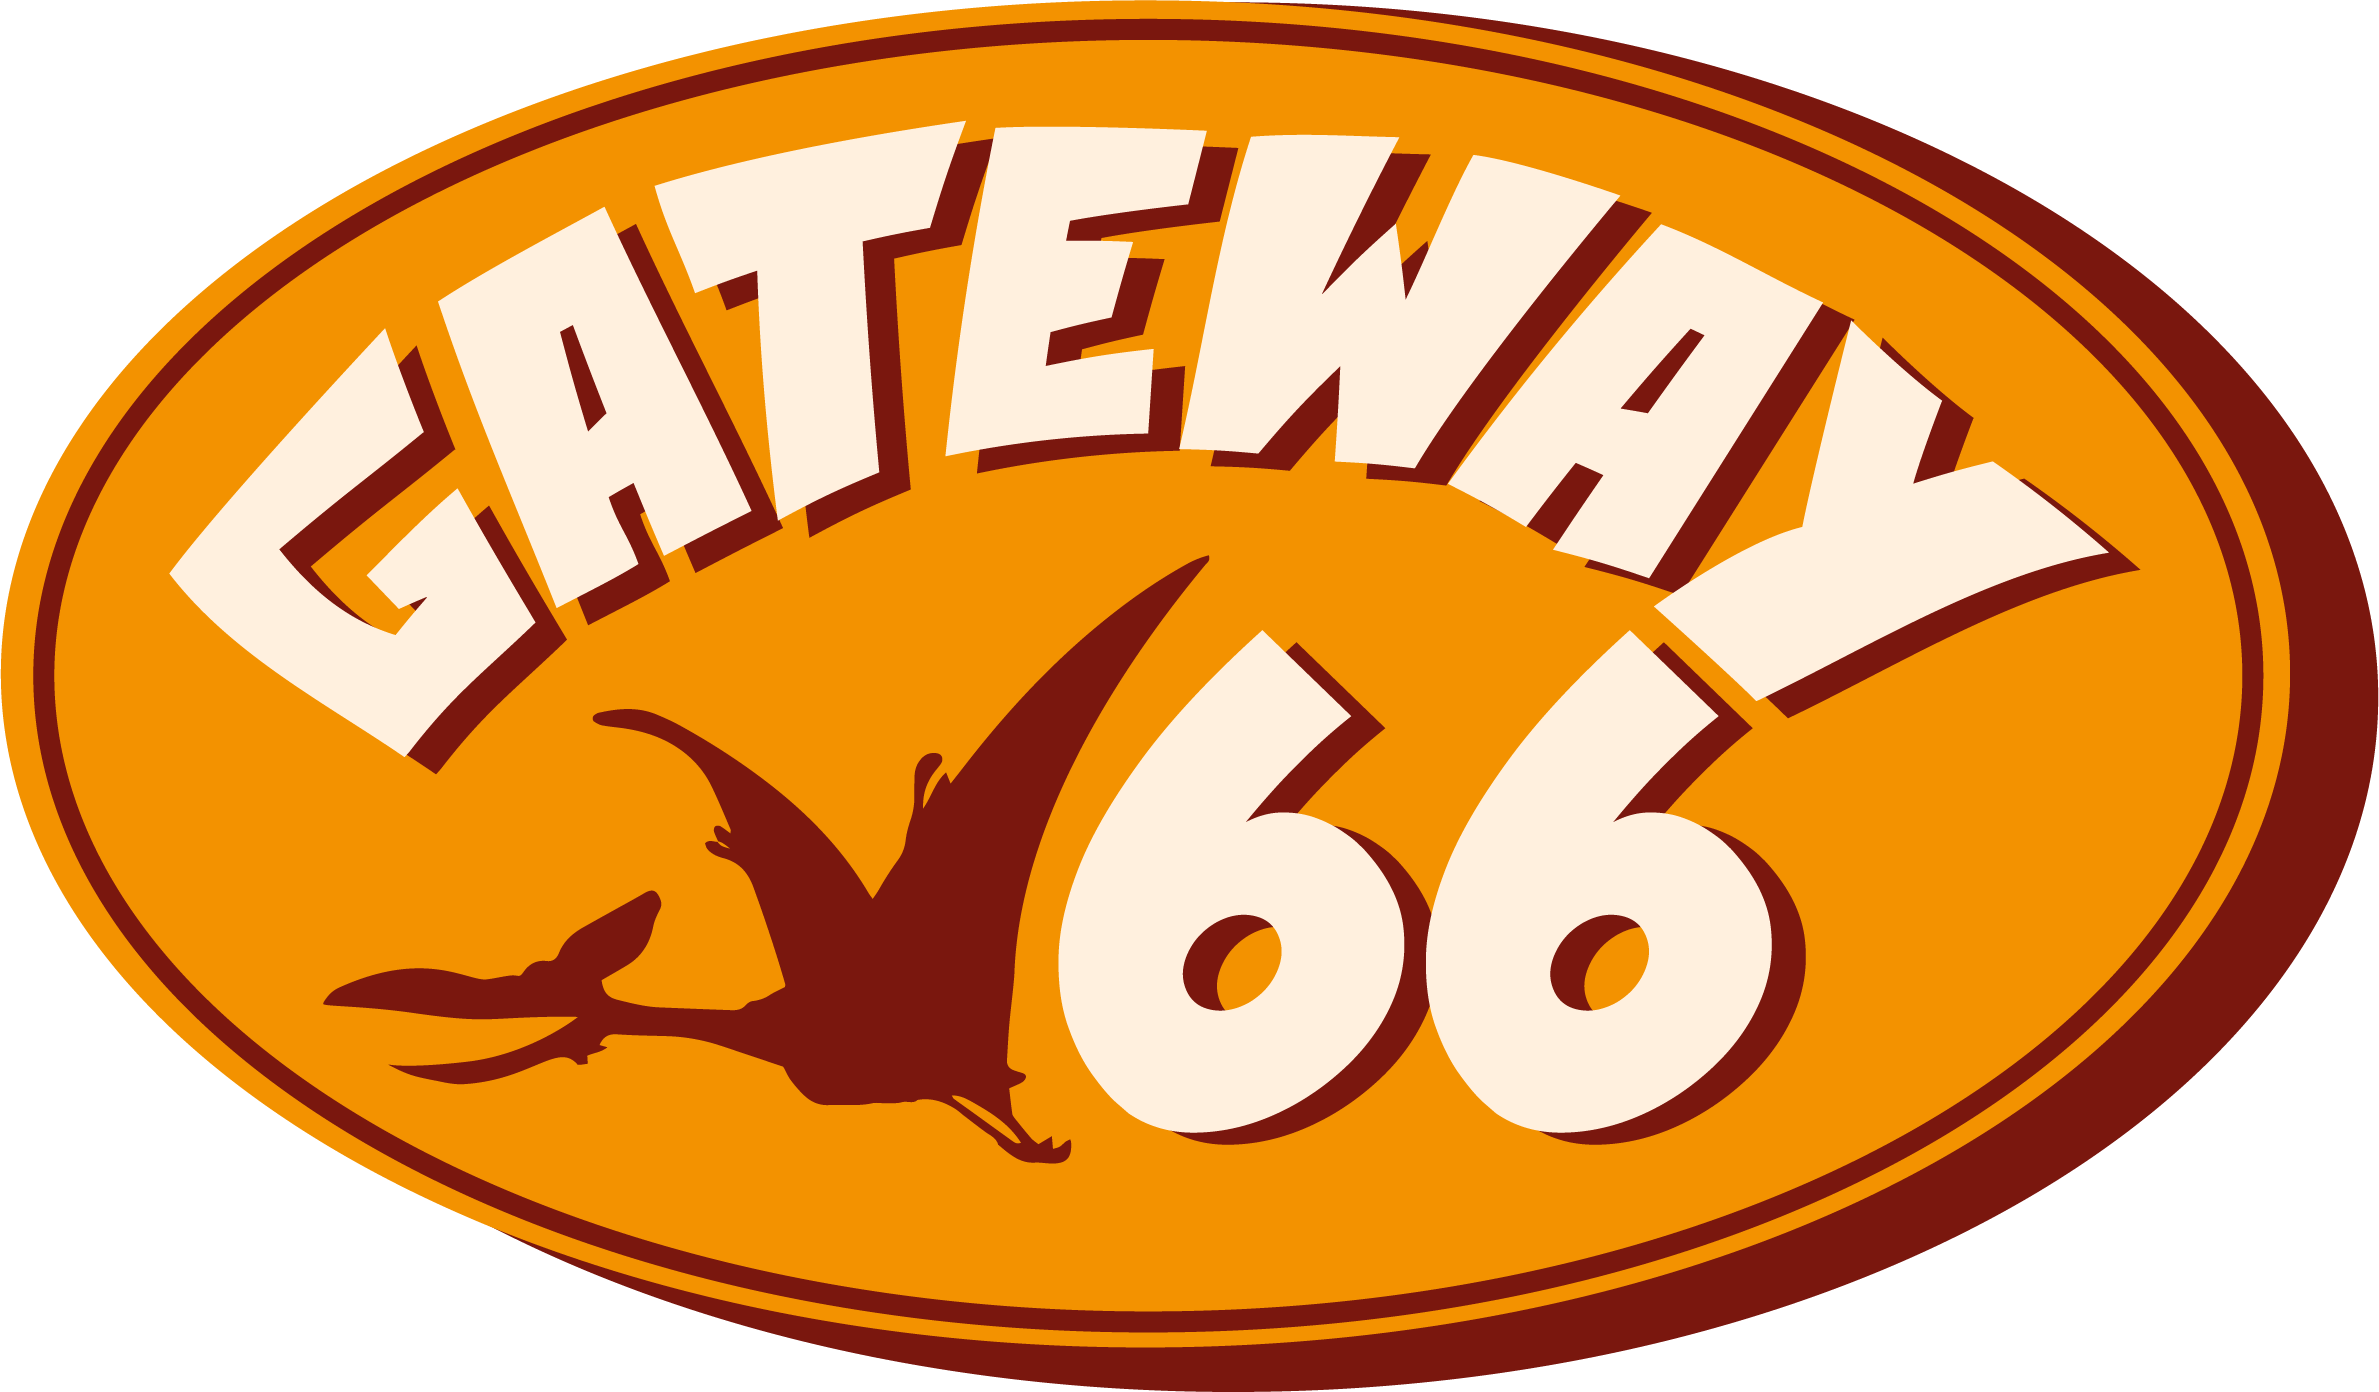 Gateway_66 logo